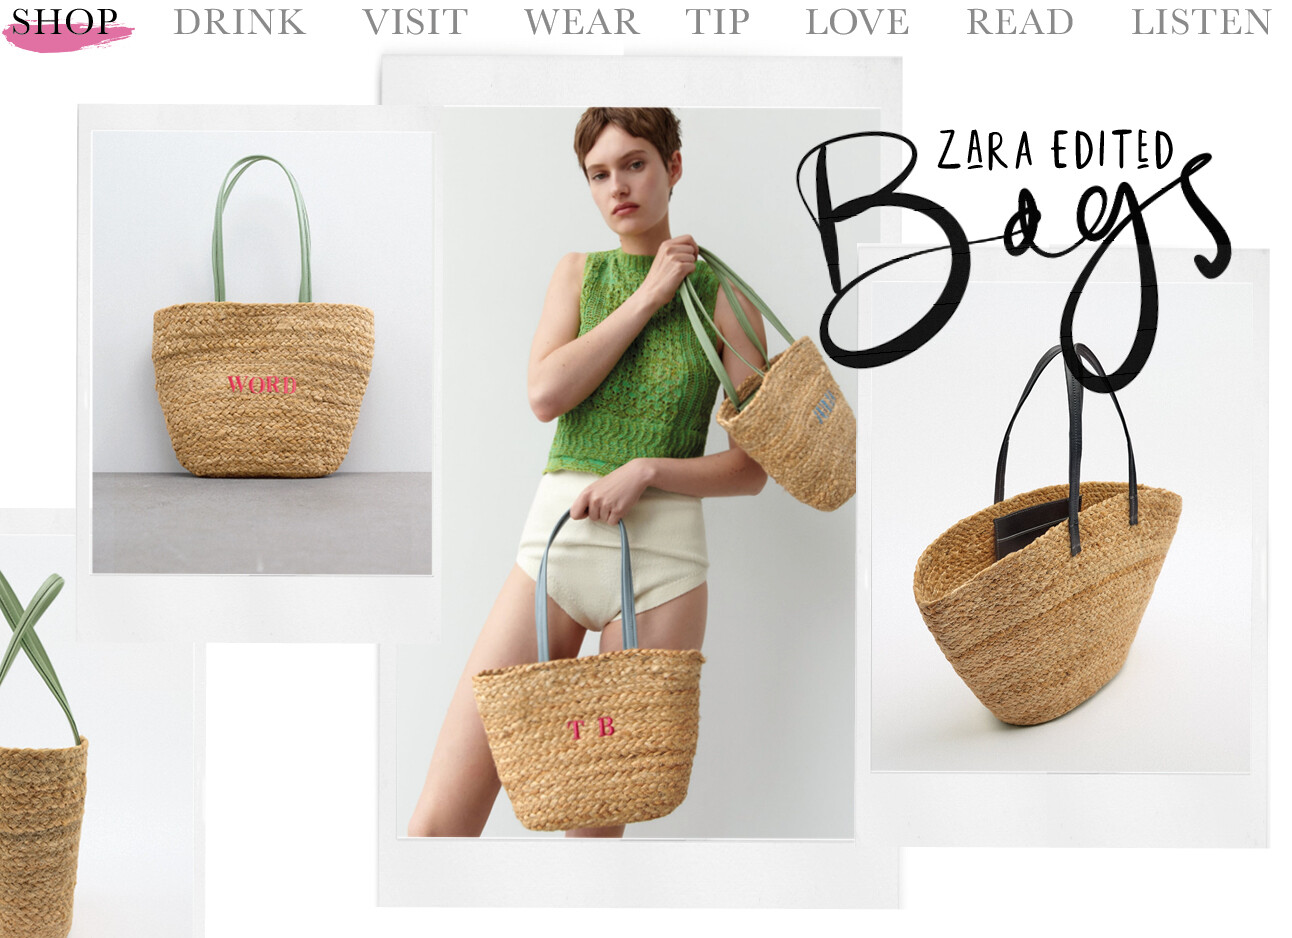 model met Zara edited rieten tassen met naam erop